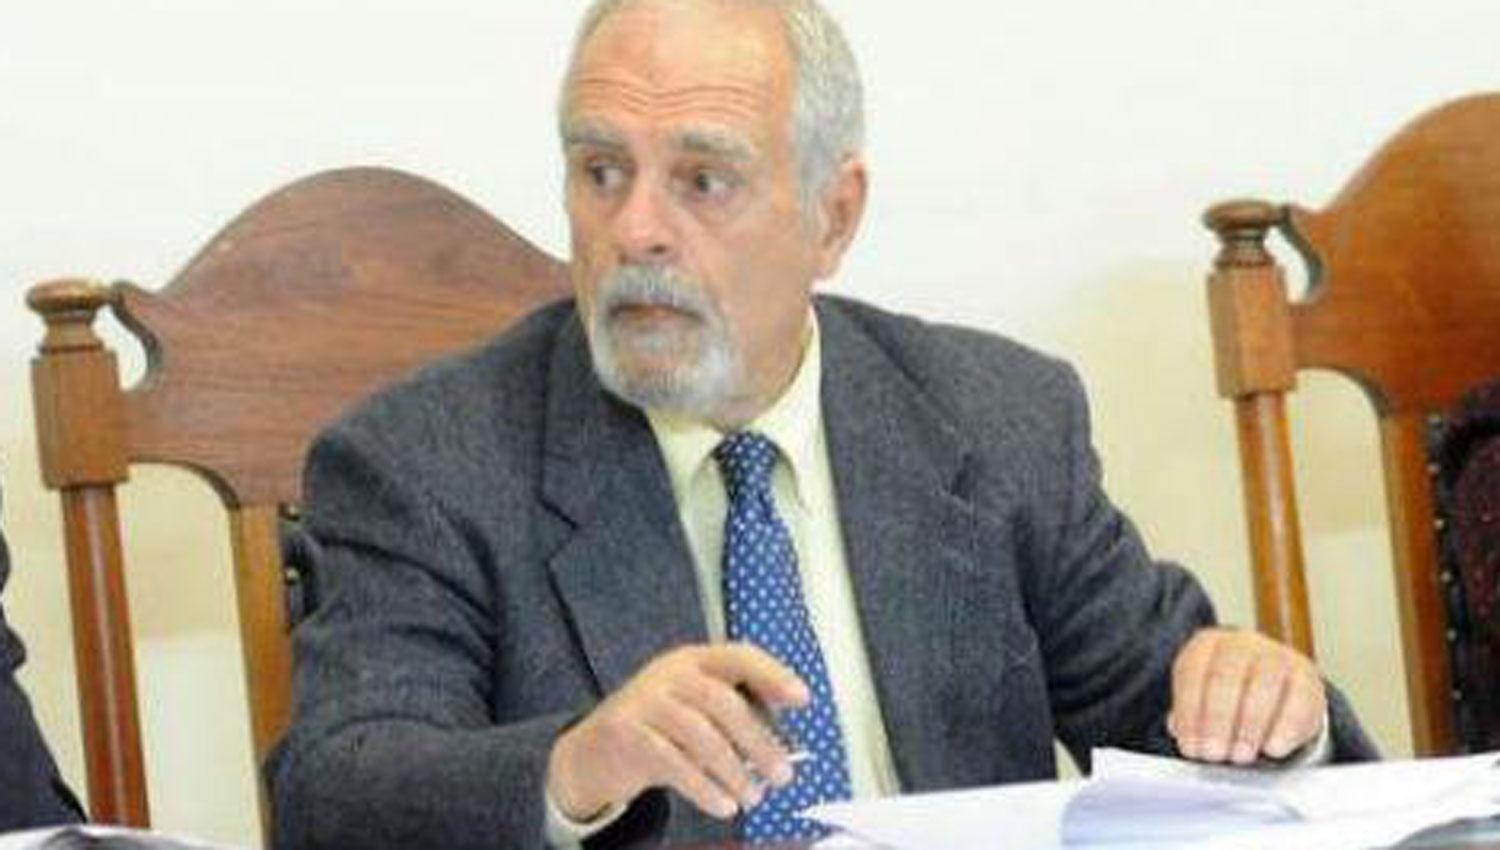 CAMARISTA REMITENTE. Emilio Páez de la Torre en un juicio oral.